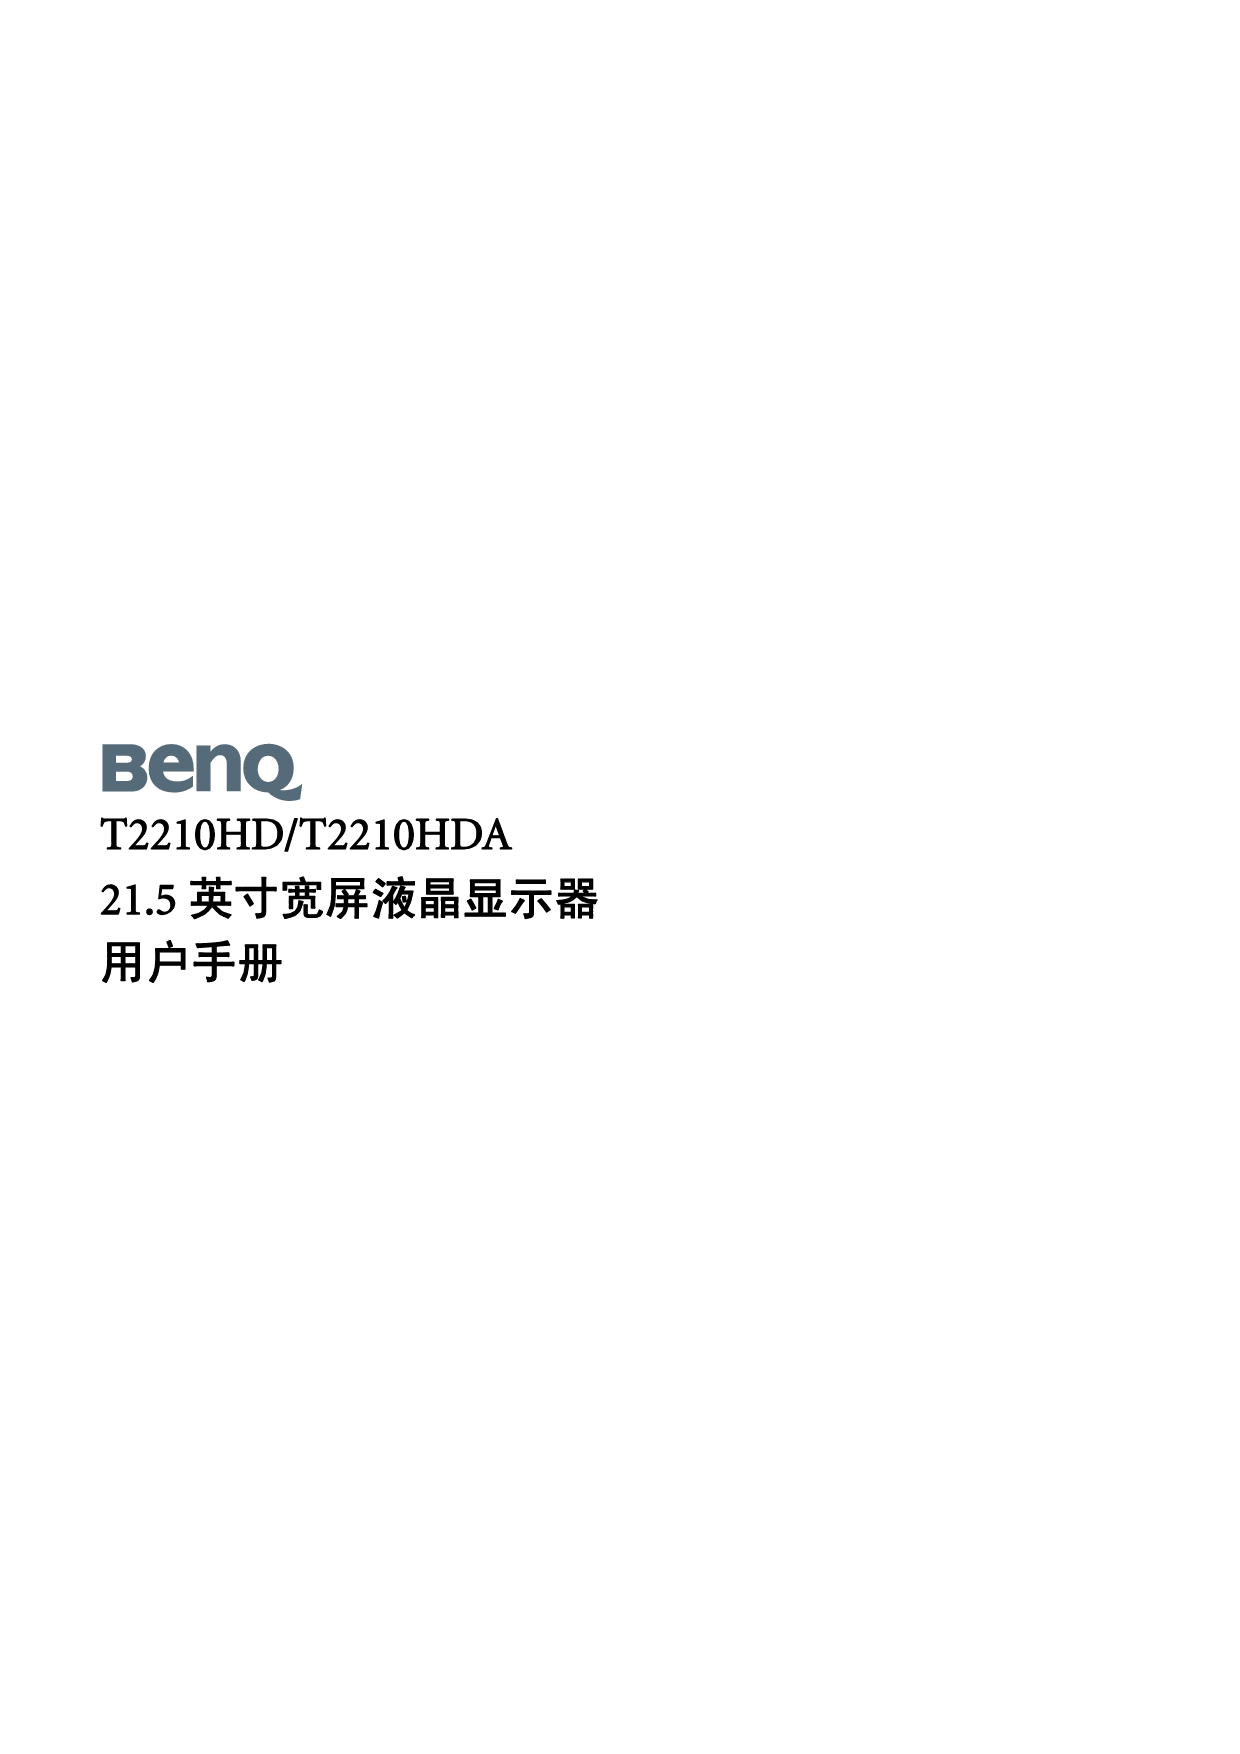 明基 Benq T2210HD 使用手册 封面